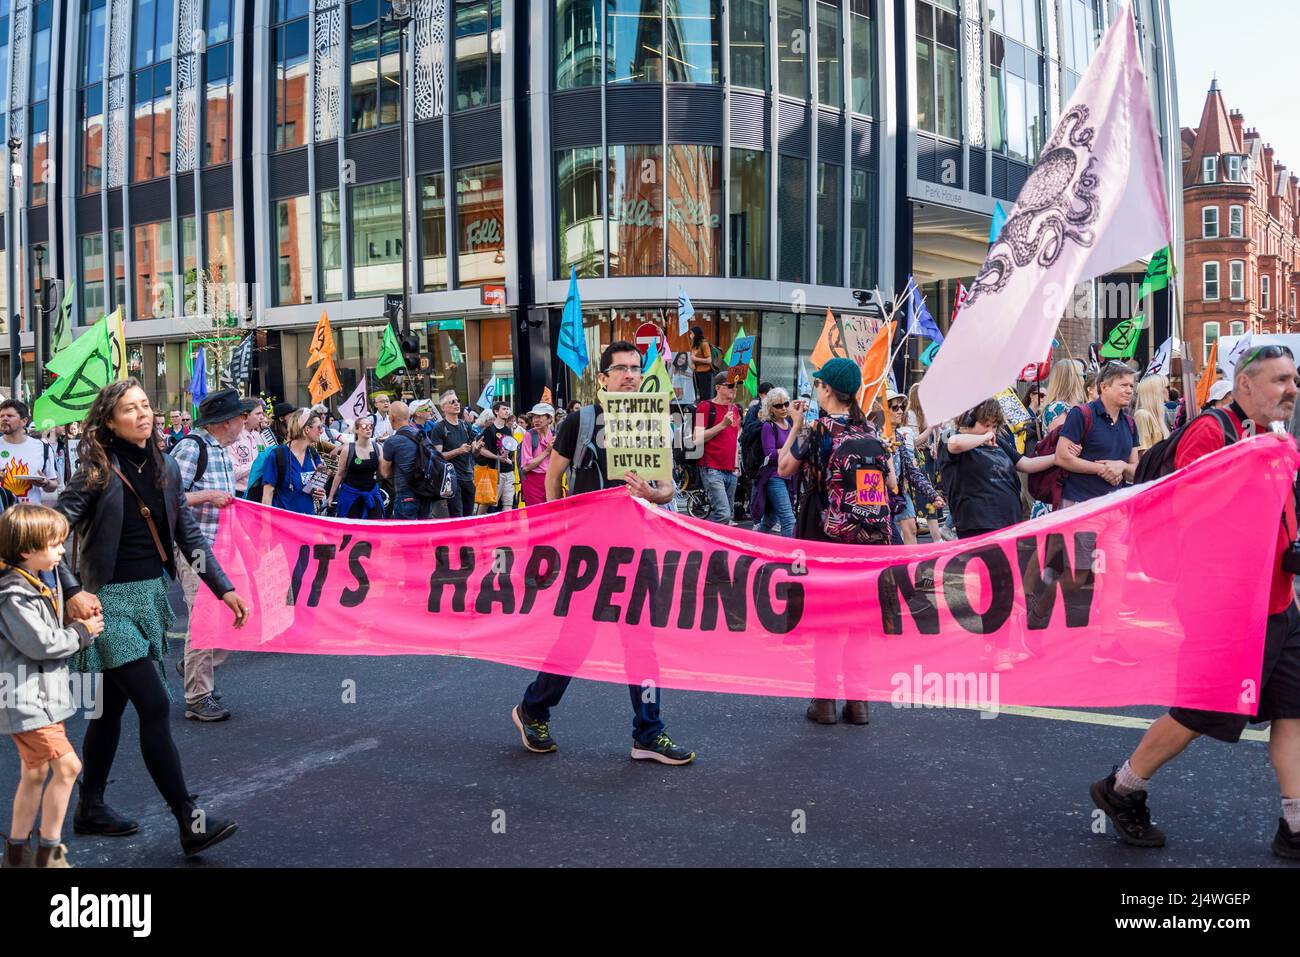 Sta accadendo ora banner a We Will not be bystanders, una protesta della ribellione di estinzione che combatte per la giustizia climatica, 16.04.2022, Londra, Inghilterra, Foto Stock